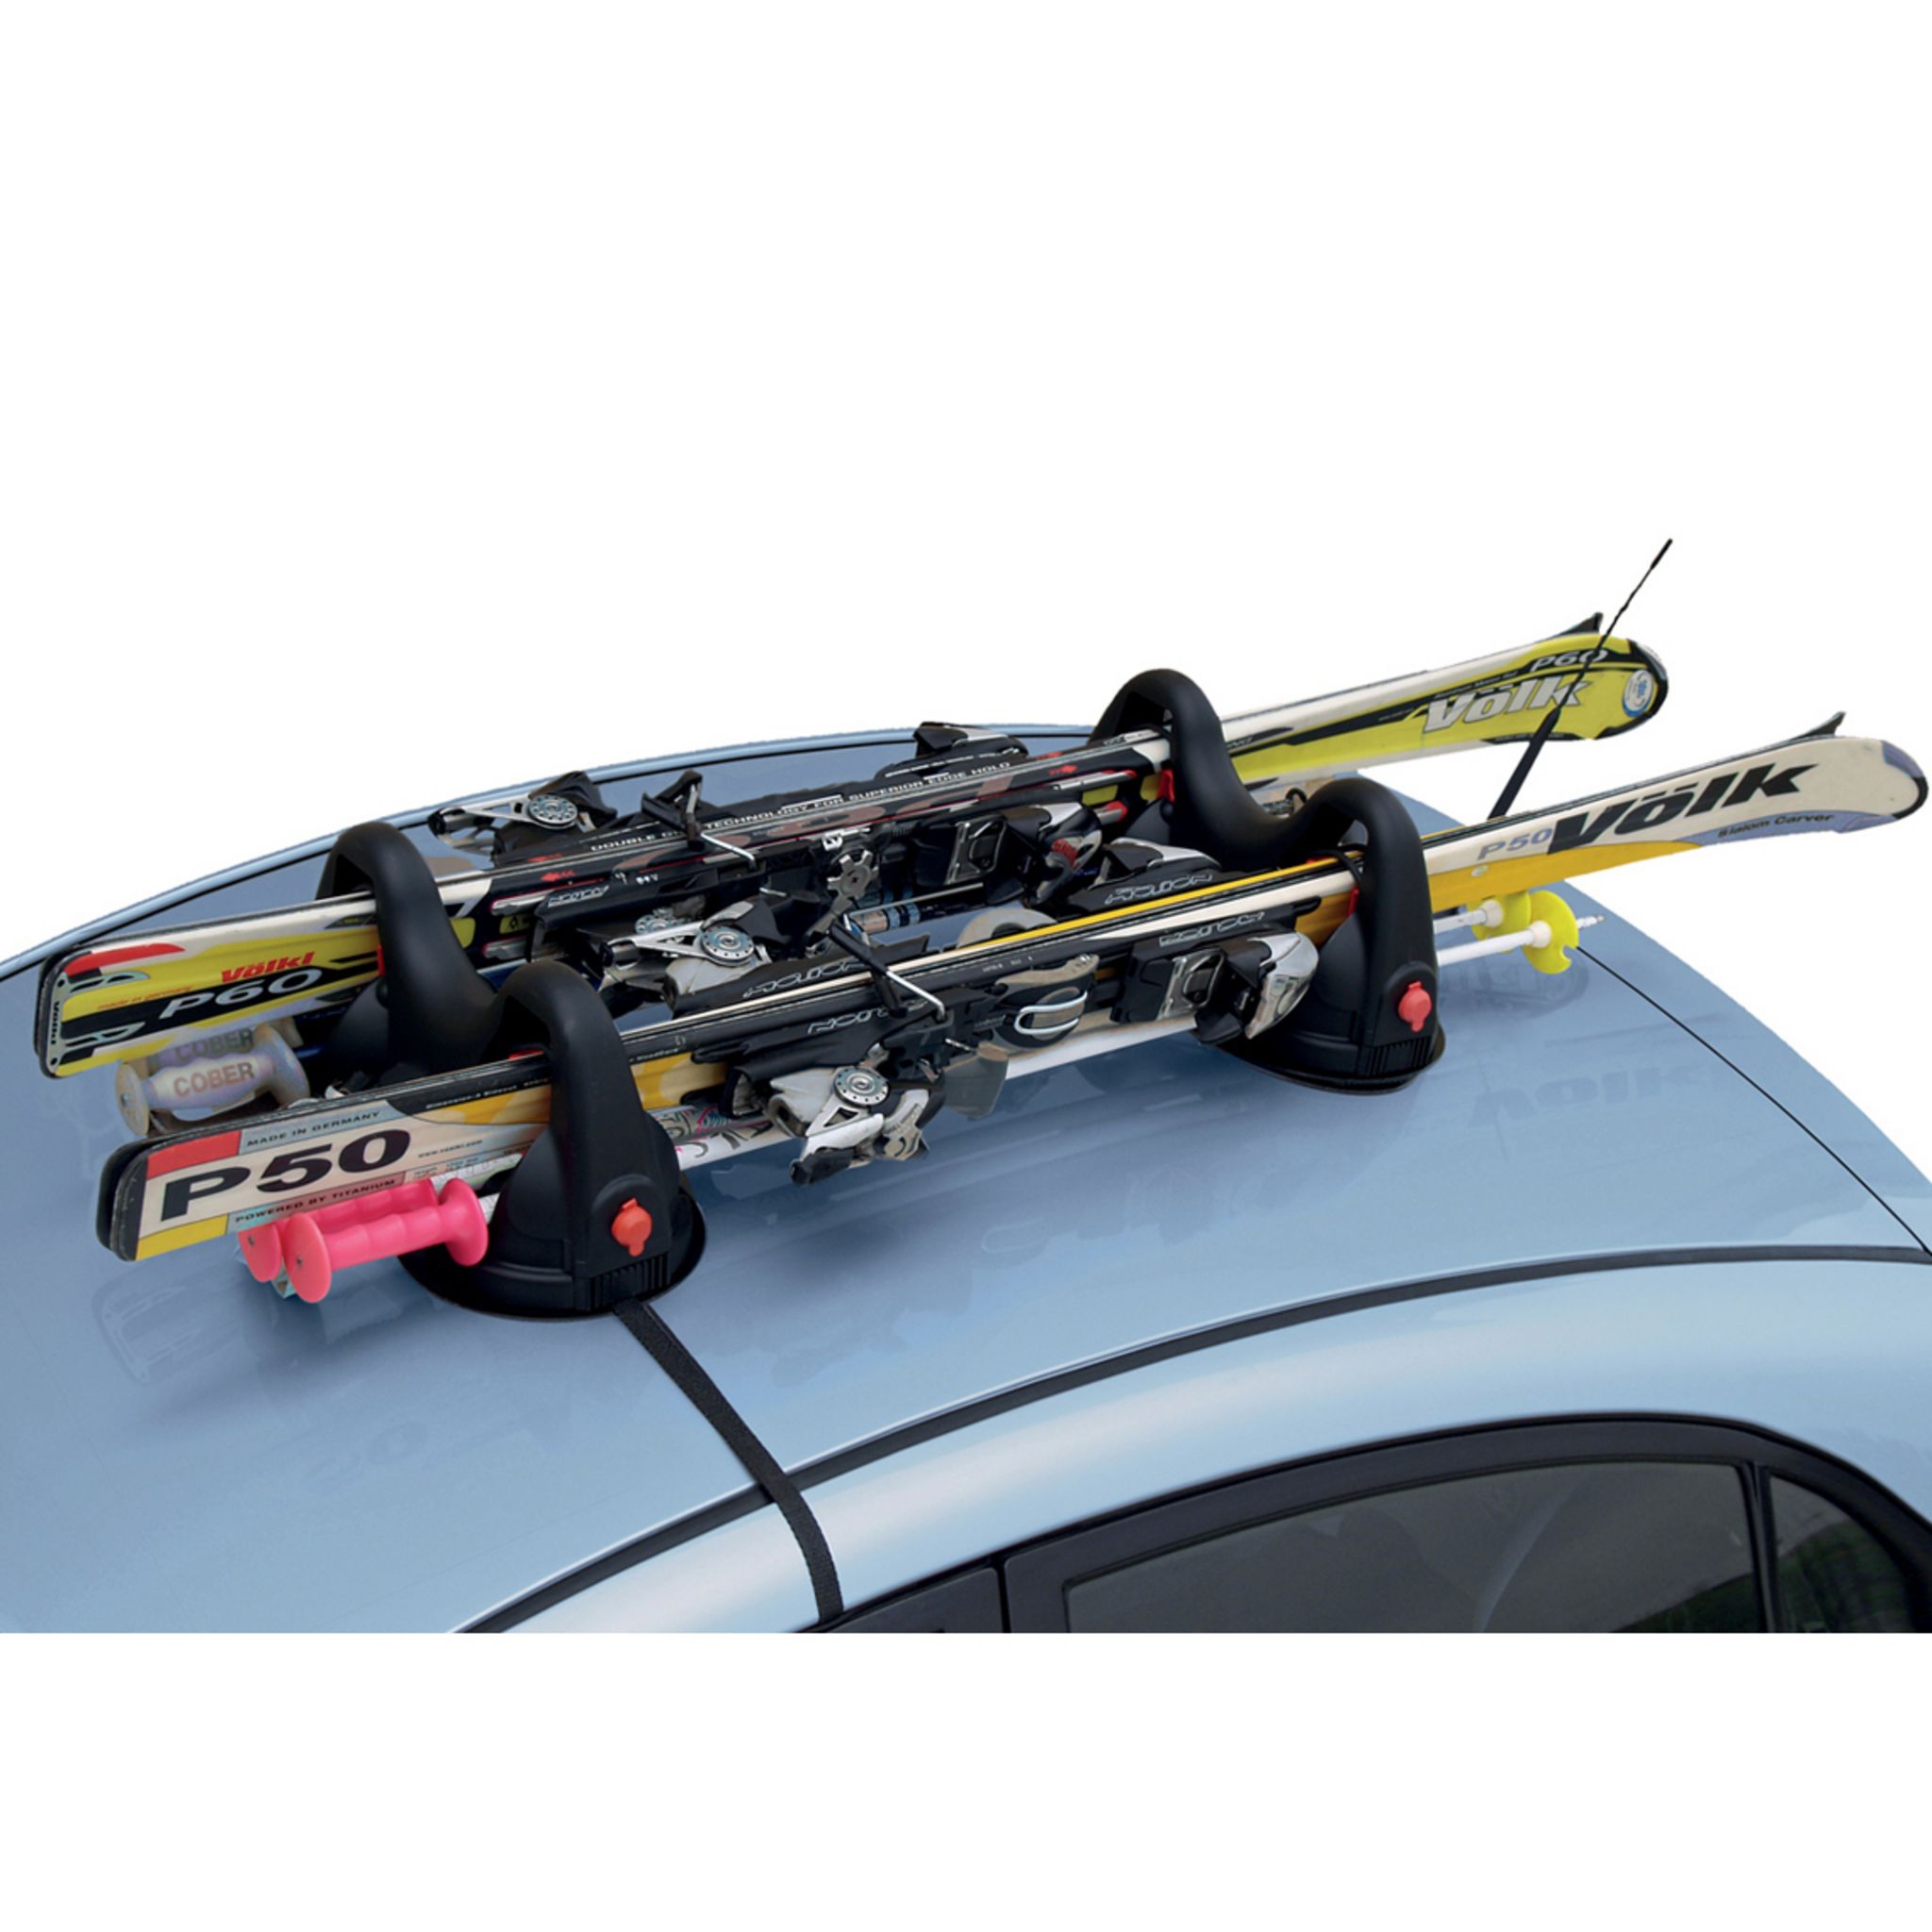 Porte-skis pour barres de toit - PORTE-SKIS - PRODUITS